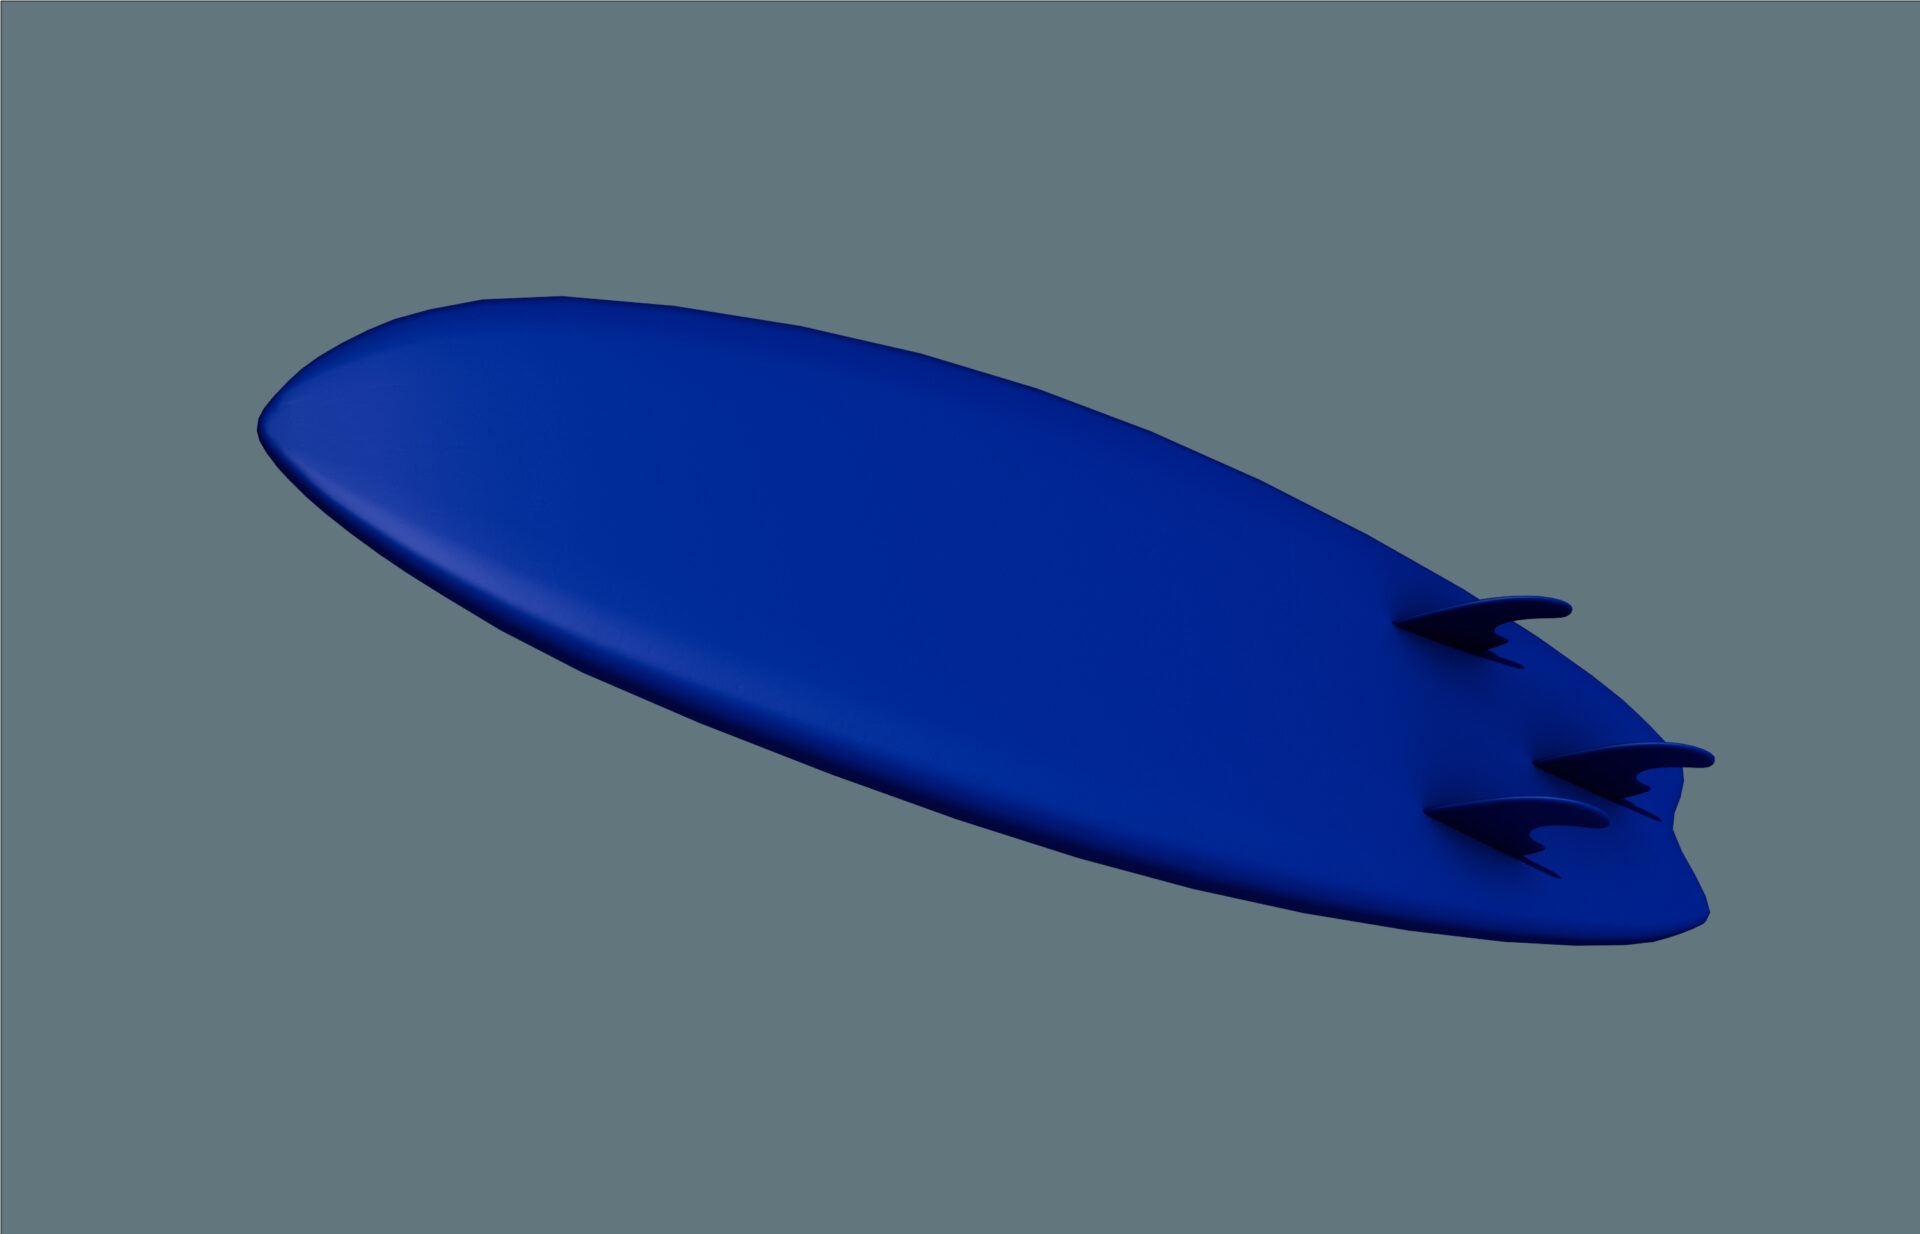 Prototipazione surf obliquo